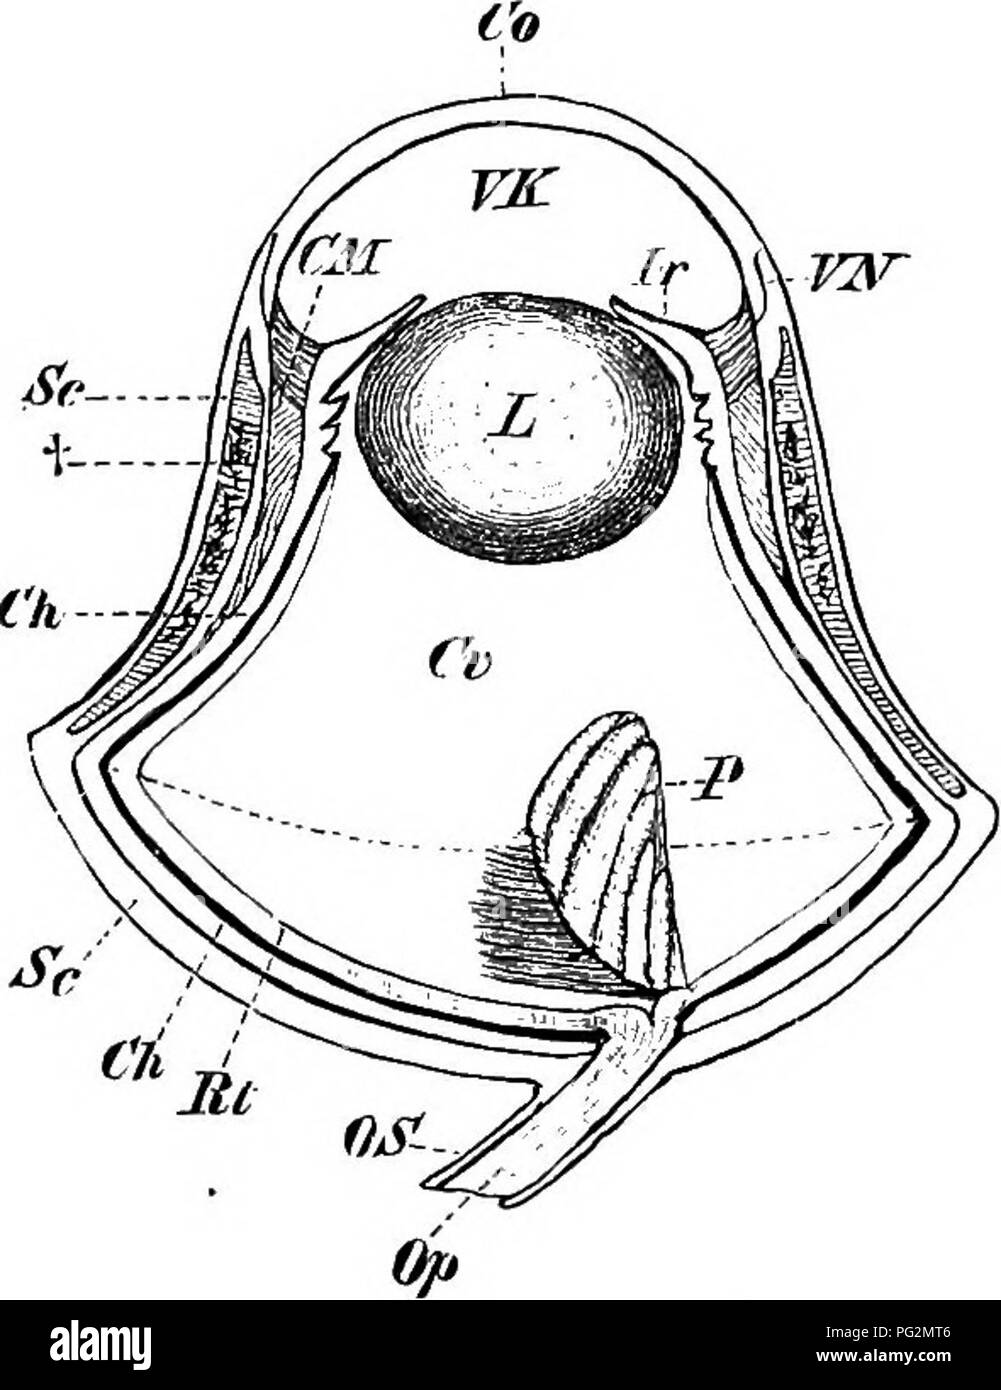 . Elementi di anatomia comparata dei vertebrati. Anatomia di confronto. Fig. 170. - Occhio OP Lacerta niu- ralis, mostrando l'anello del tessuto osseo Sclero- tic piastre. Fig. 171.-occhio di un gufo. Rt, retina ; Ch, coroide; Sc, sclerotiche, con il suo anello osseo a t : CM, muscolo ciliare; Co, cornea; VN, punto di jvmction tra sclerotiche e cornea ; Jr, iris; VK, la camera anteriore; L, lente ; Cr, vitreo ; P, pecten; Op, Os, del nervo ottico e la guaina. La linea tratteggiata passante attraverso la porzione più ampia della circonferenza dell'occhio divide quest'ultimo in una superficie interna ed una superficie esterna di segmento. porzione esterna è Foto Stock